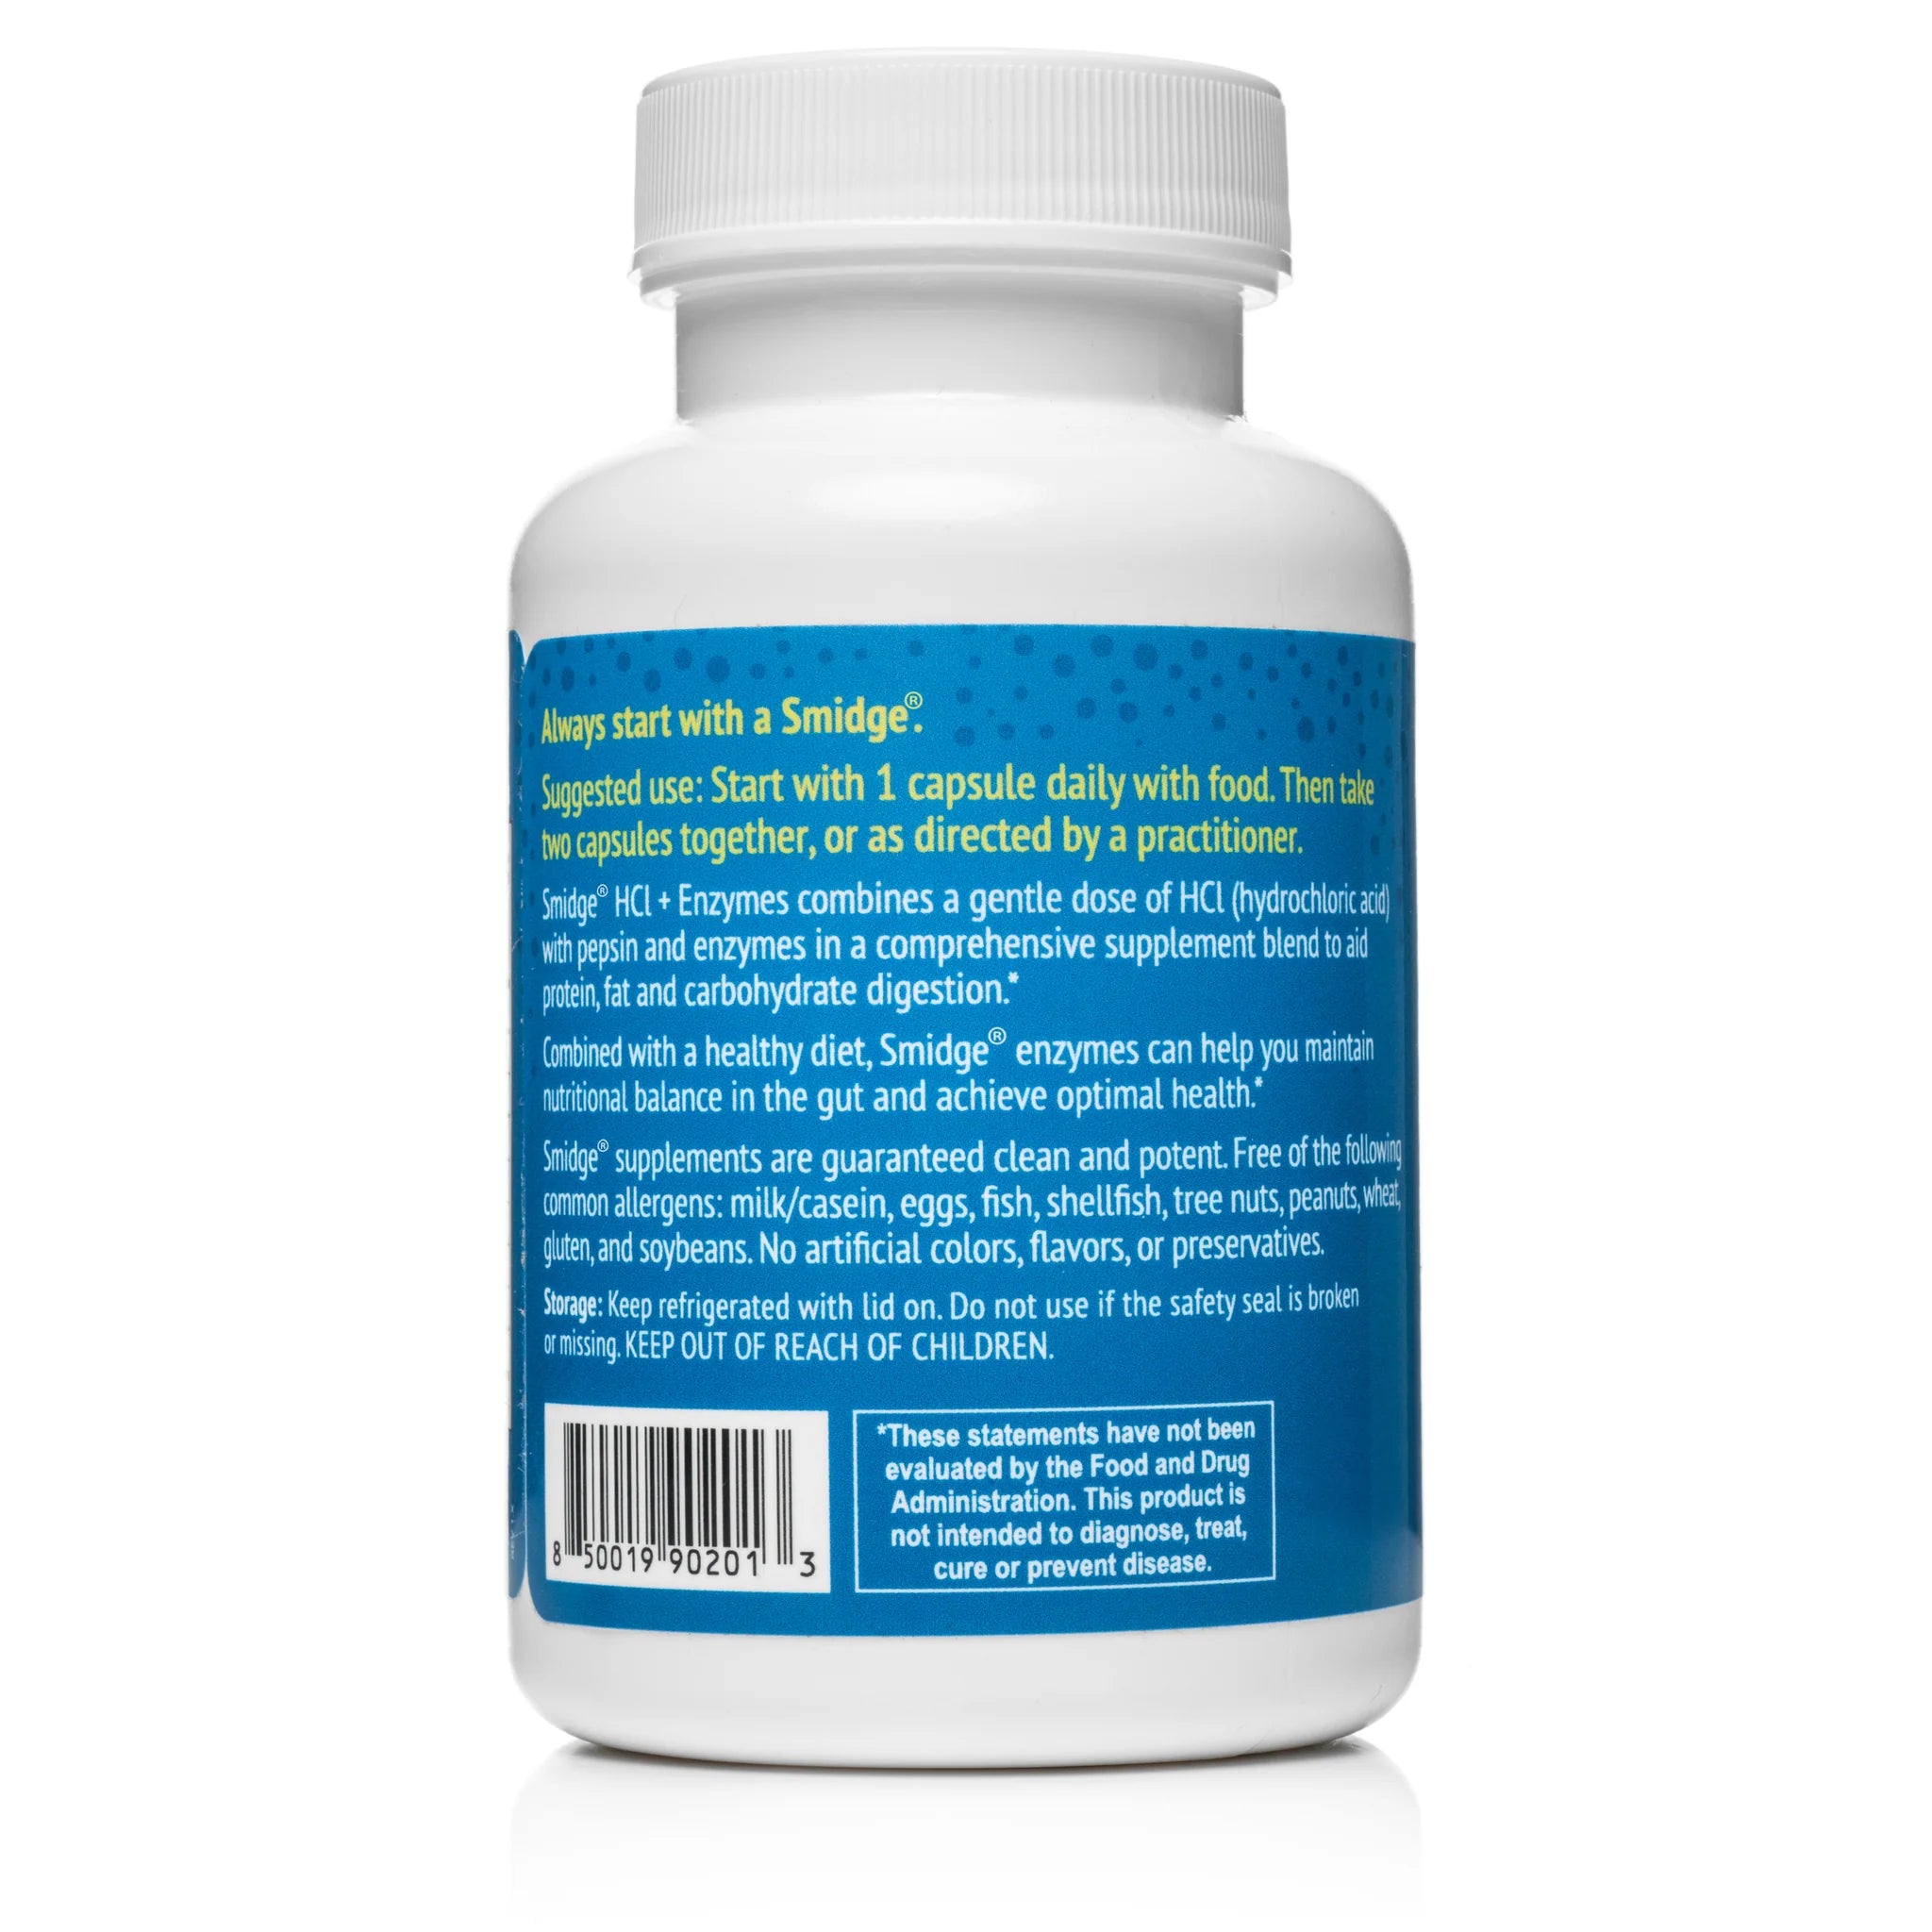 Smidge HCl + Enzyme Capsules